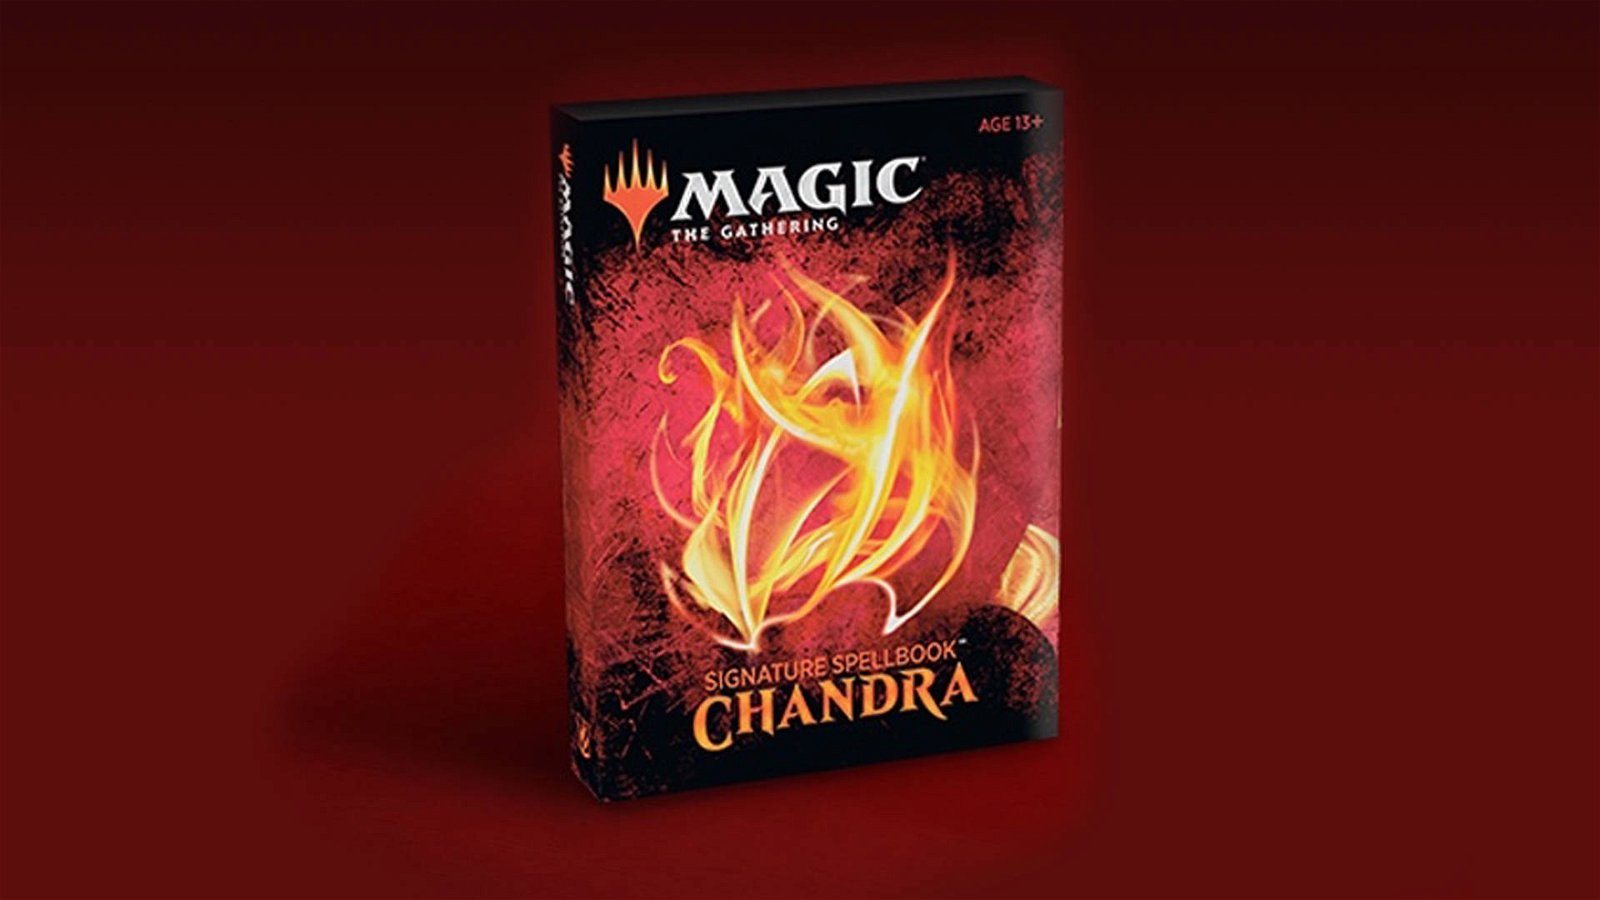 Immagine di Magic The Gathering: Wizards annuncia un nuovo Signature Spellbook